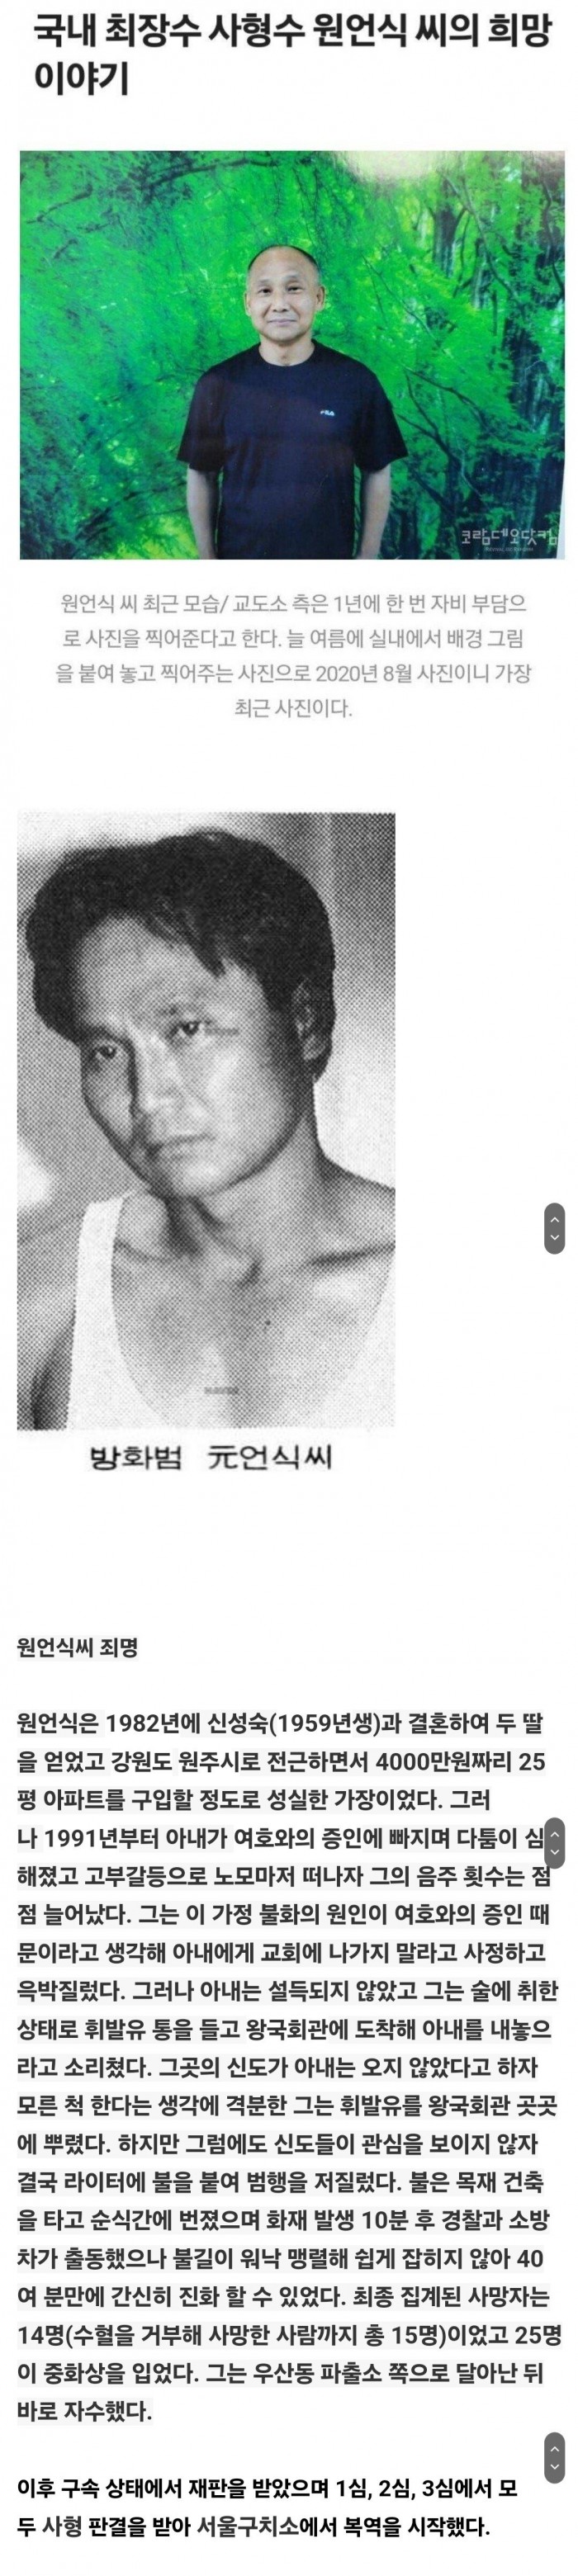 대한민국 최장수 사형수의 최근 모습